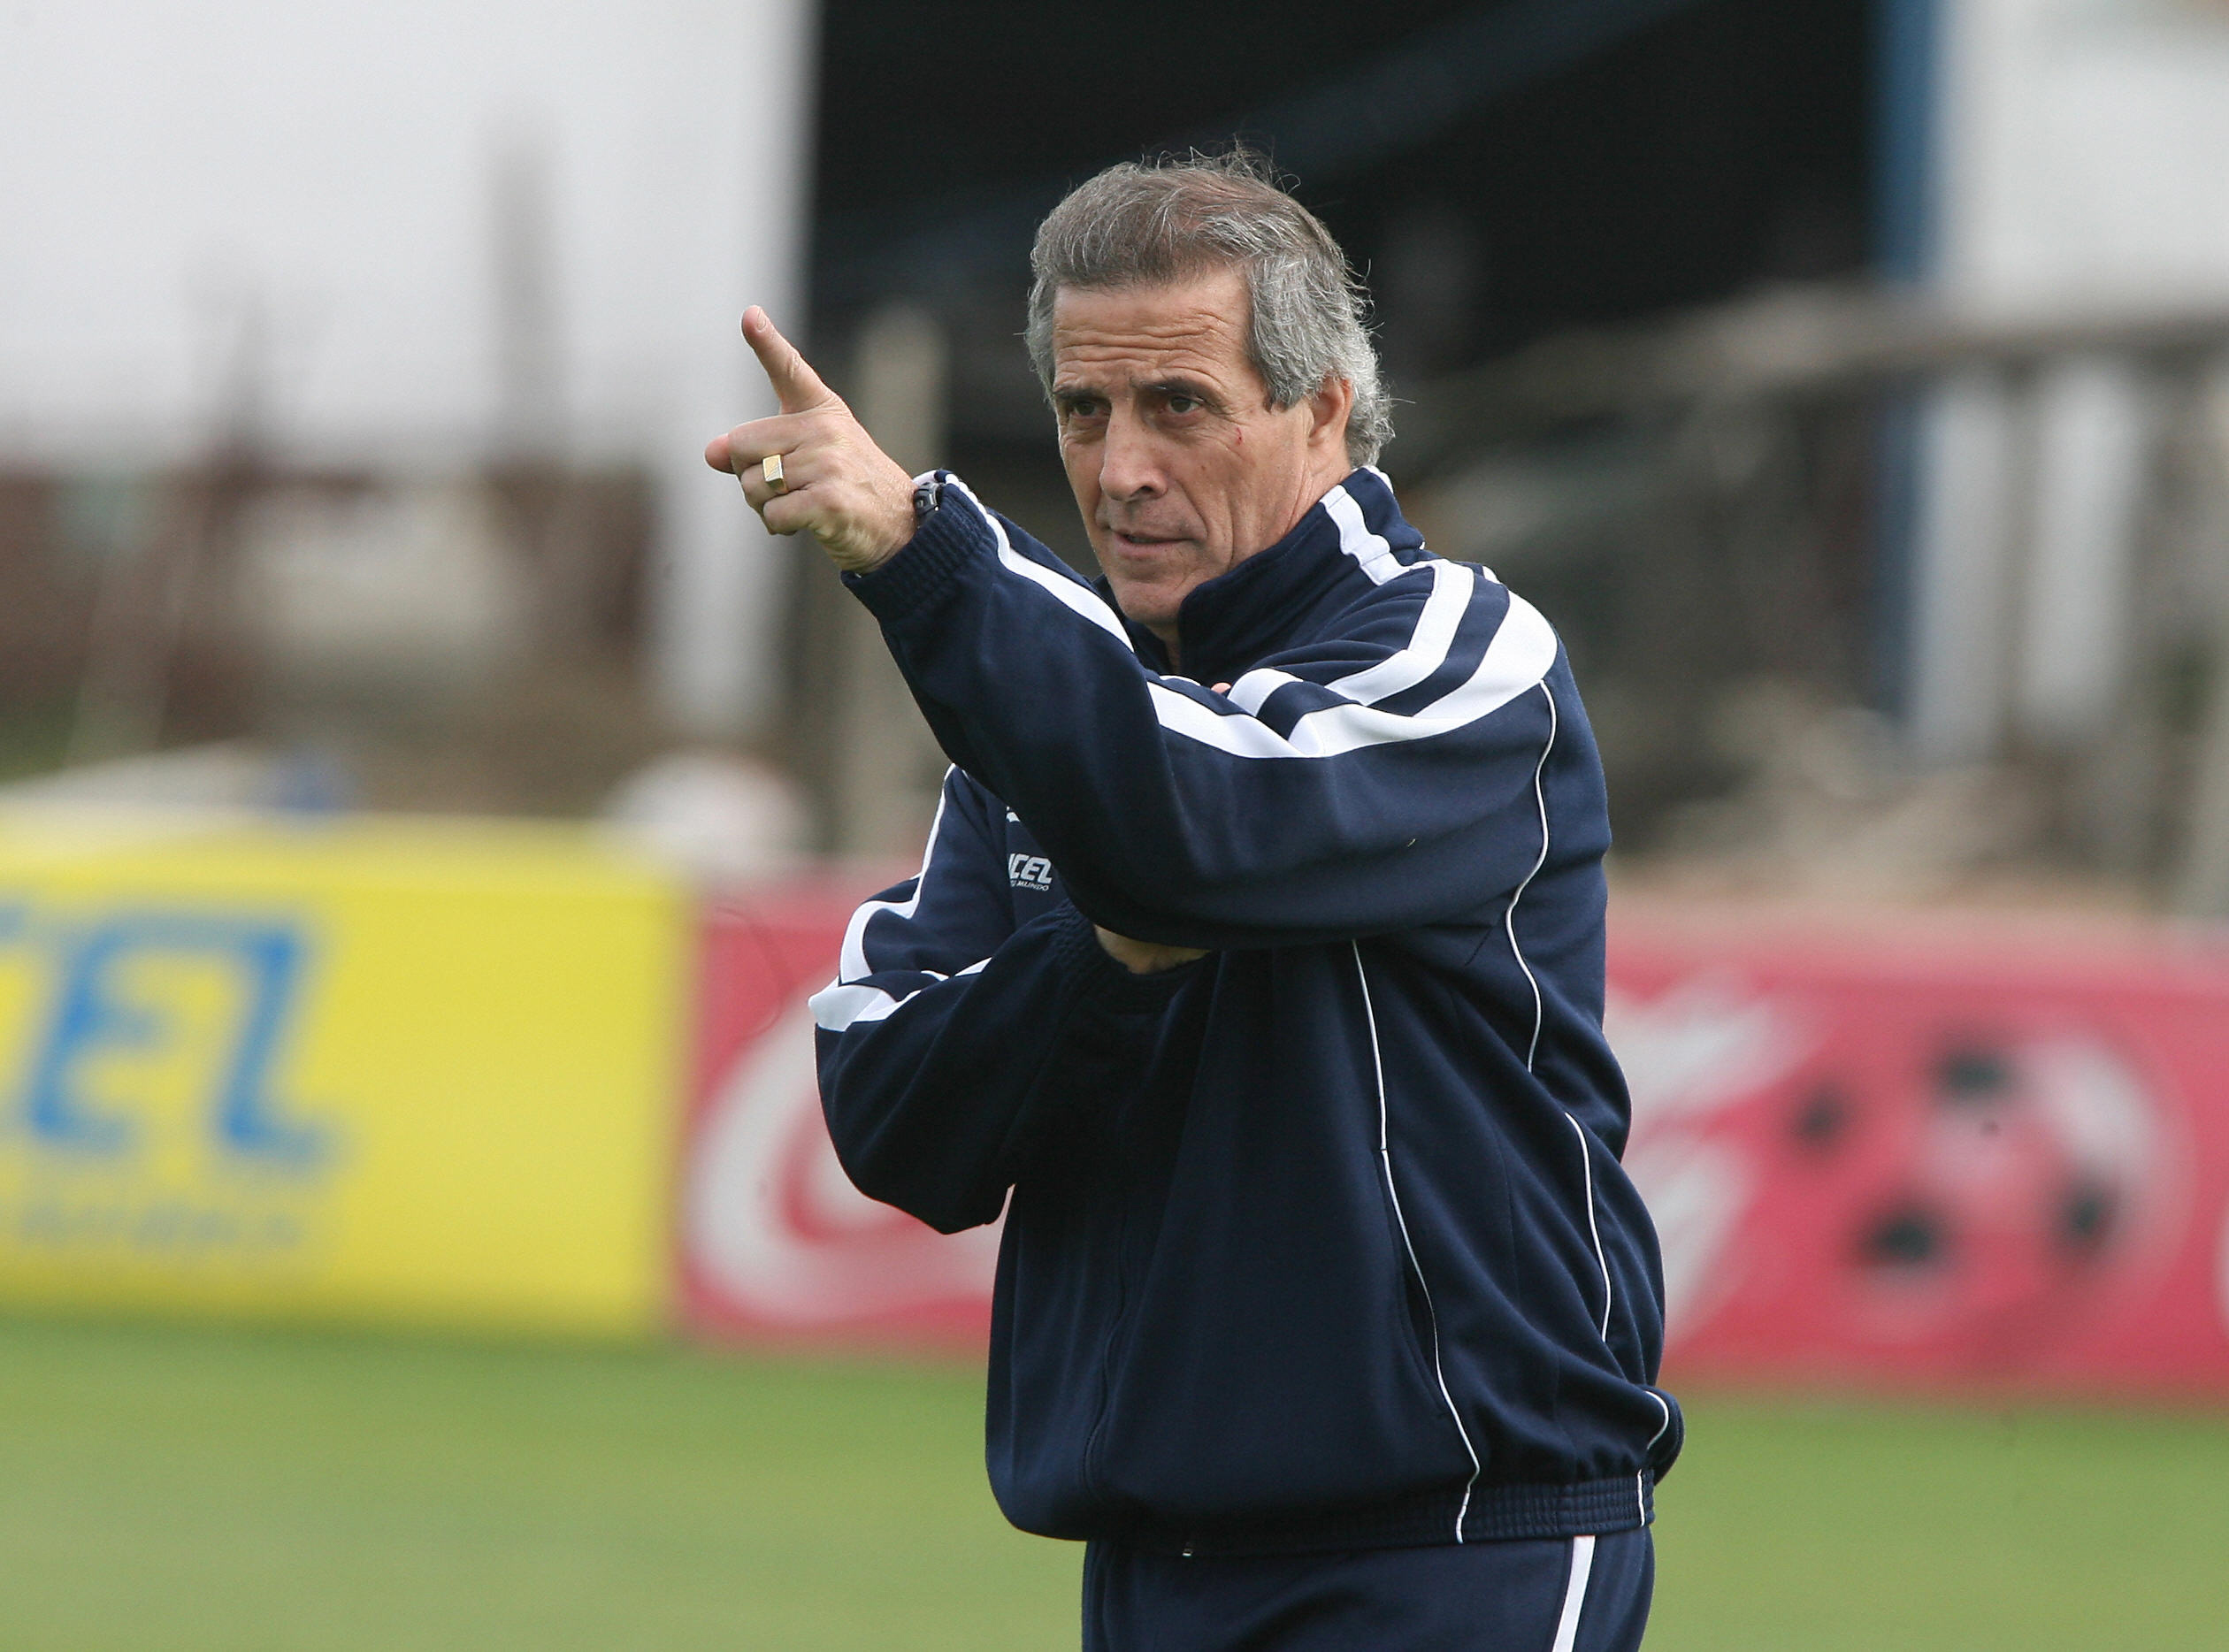 Tabarez masterminded Uruguay's success